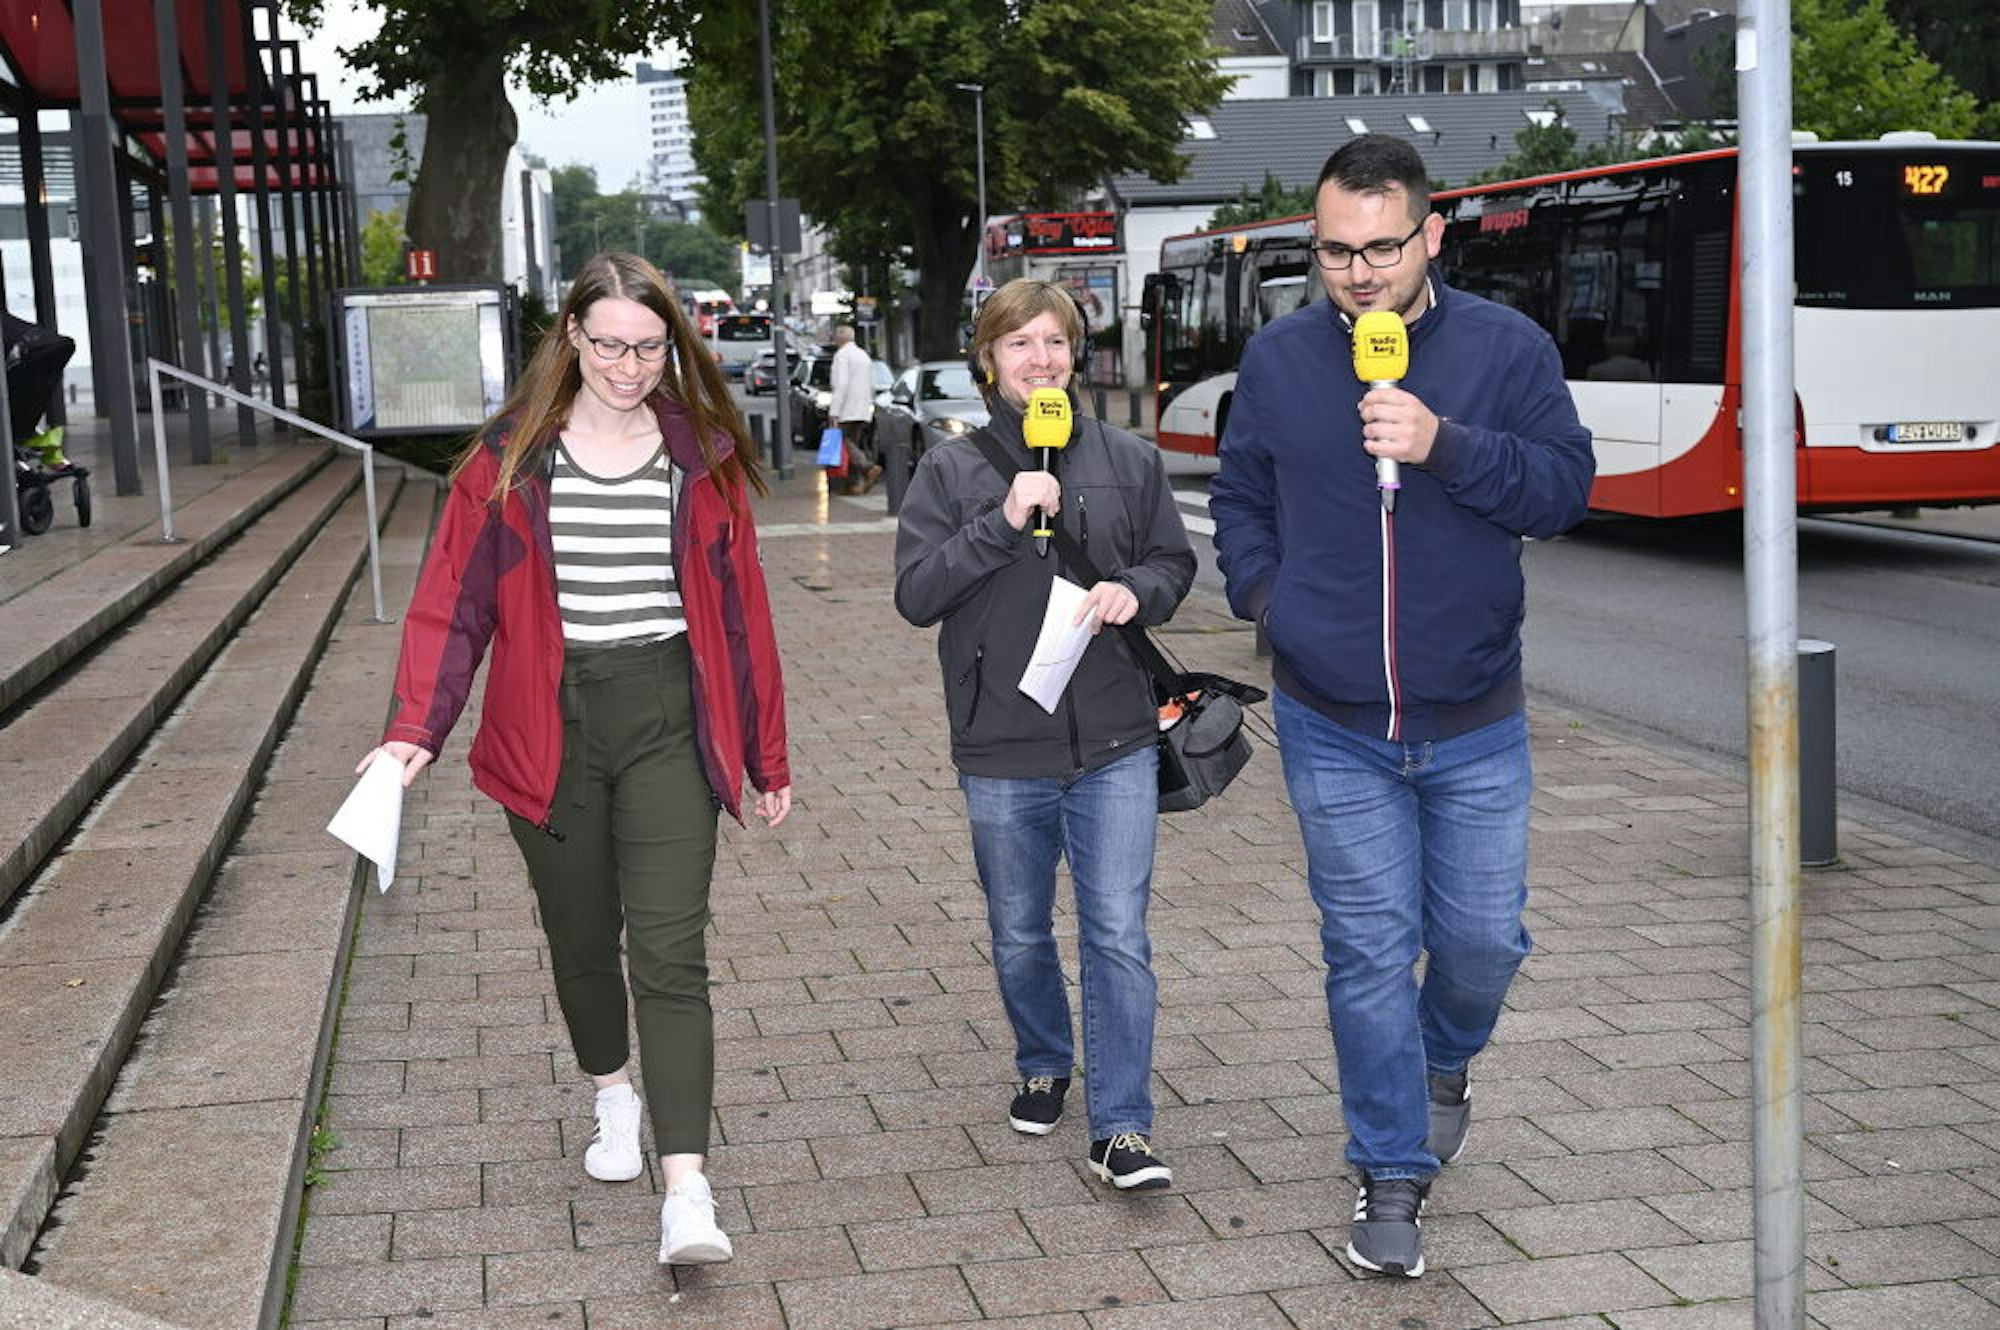 Zeitungsredakteurin Linda Thielen, Sascha Wandhöfer von Radio Berg sprachen mit SPD-Direktkandidat für Rhein-Berg Kastriot Krasniqi (r.).